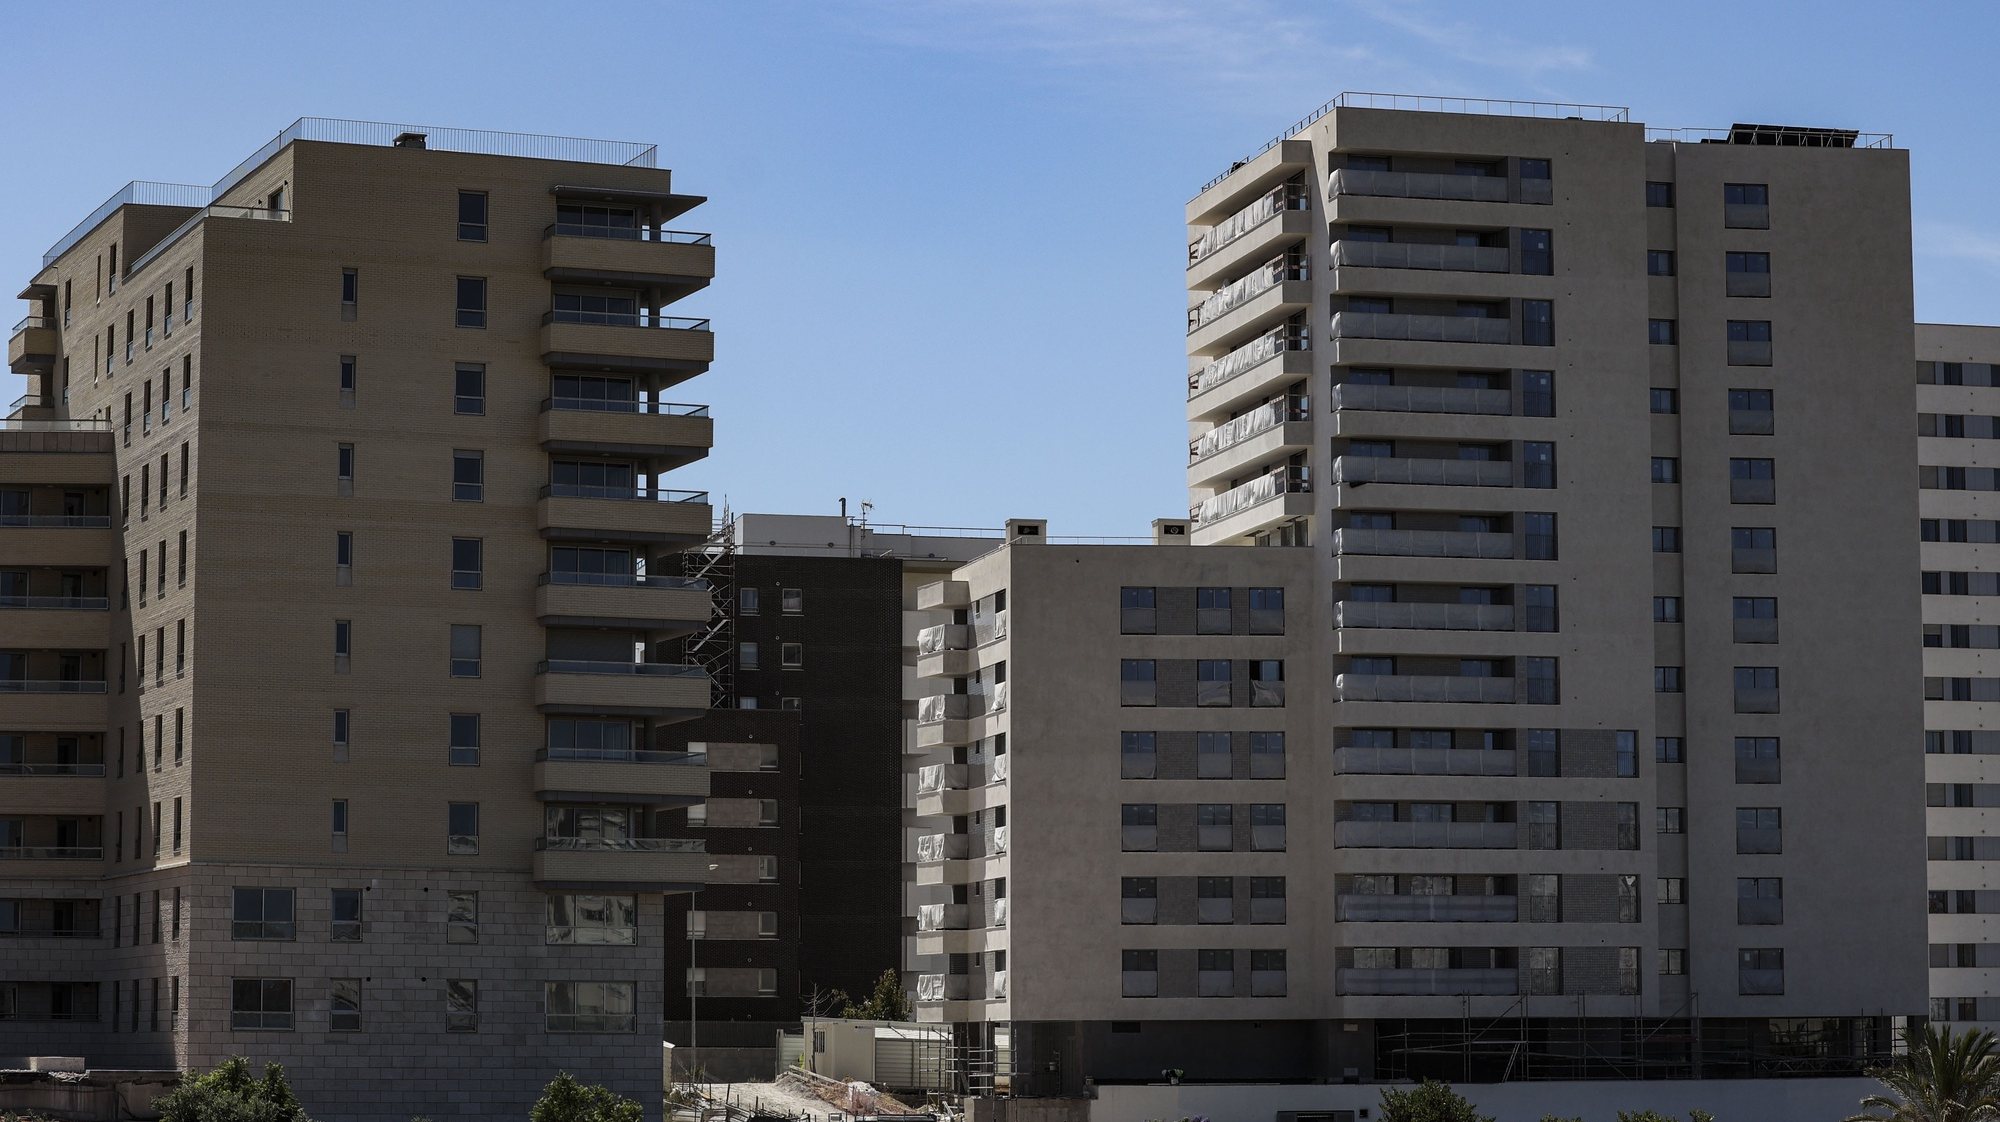 Prédio para habitação própria, arendar, vender ou alugar no distrito de Lisboa, 31 de agosto de 2023. MIGUEL A. LOPES/LUSA